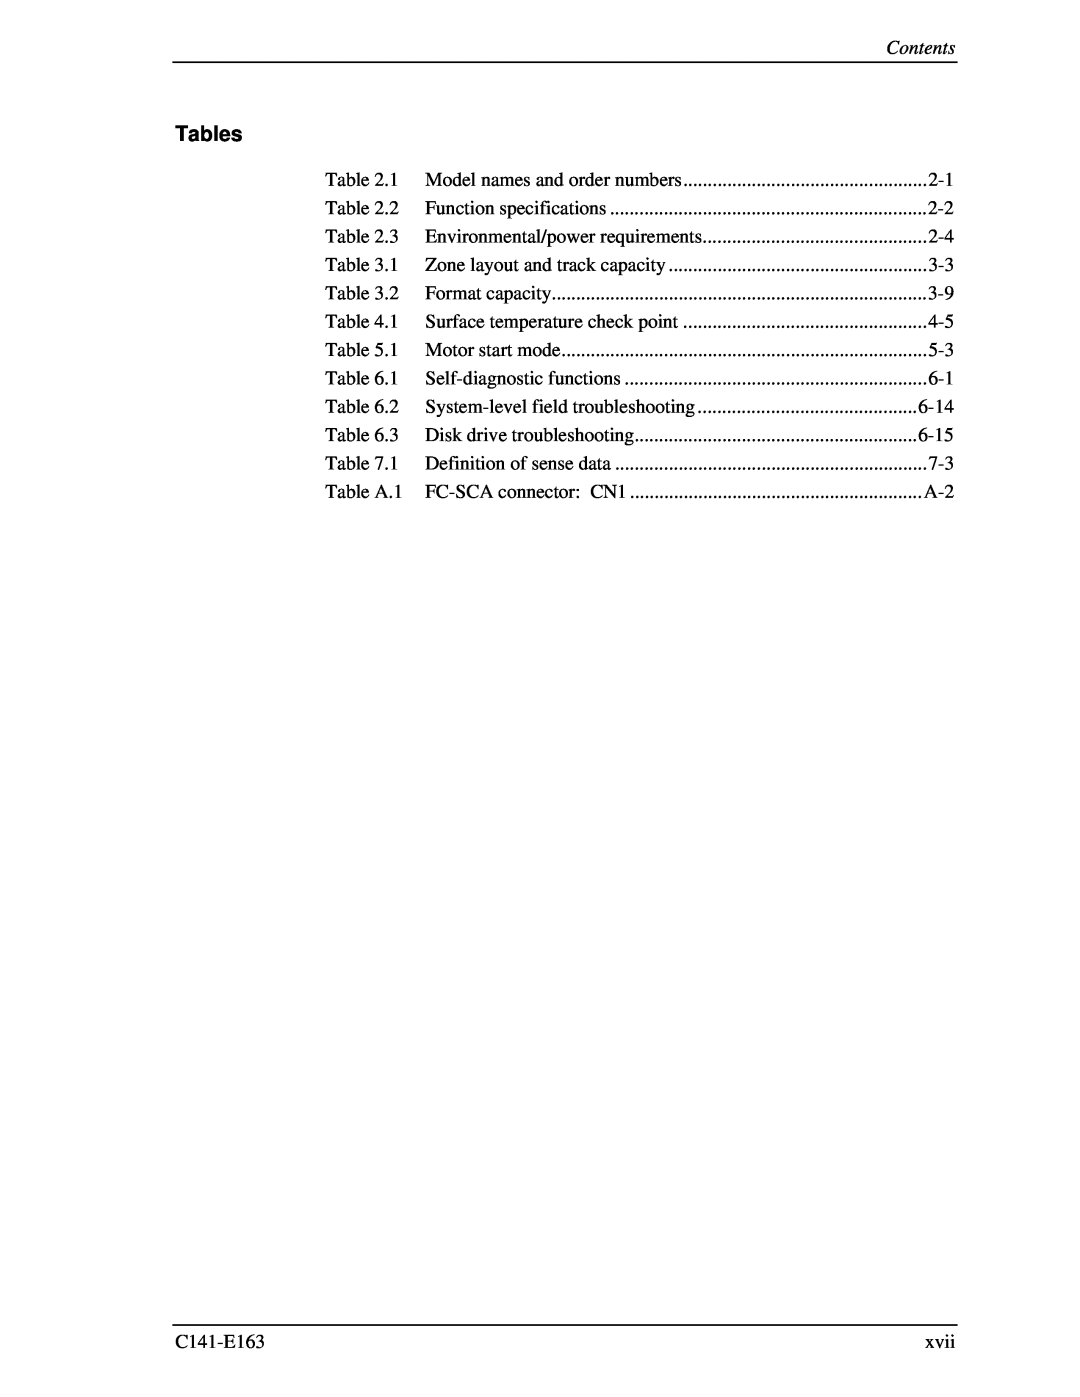 Fujitsu MAP3735FC, MAP3147FC manual Tables, Contents 